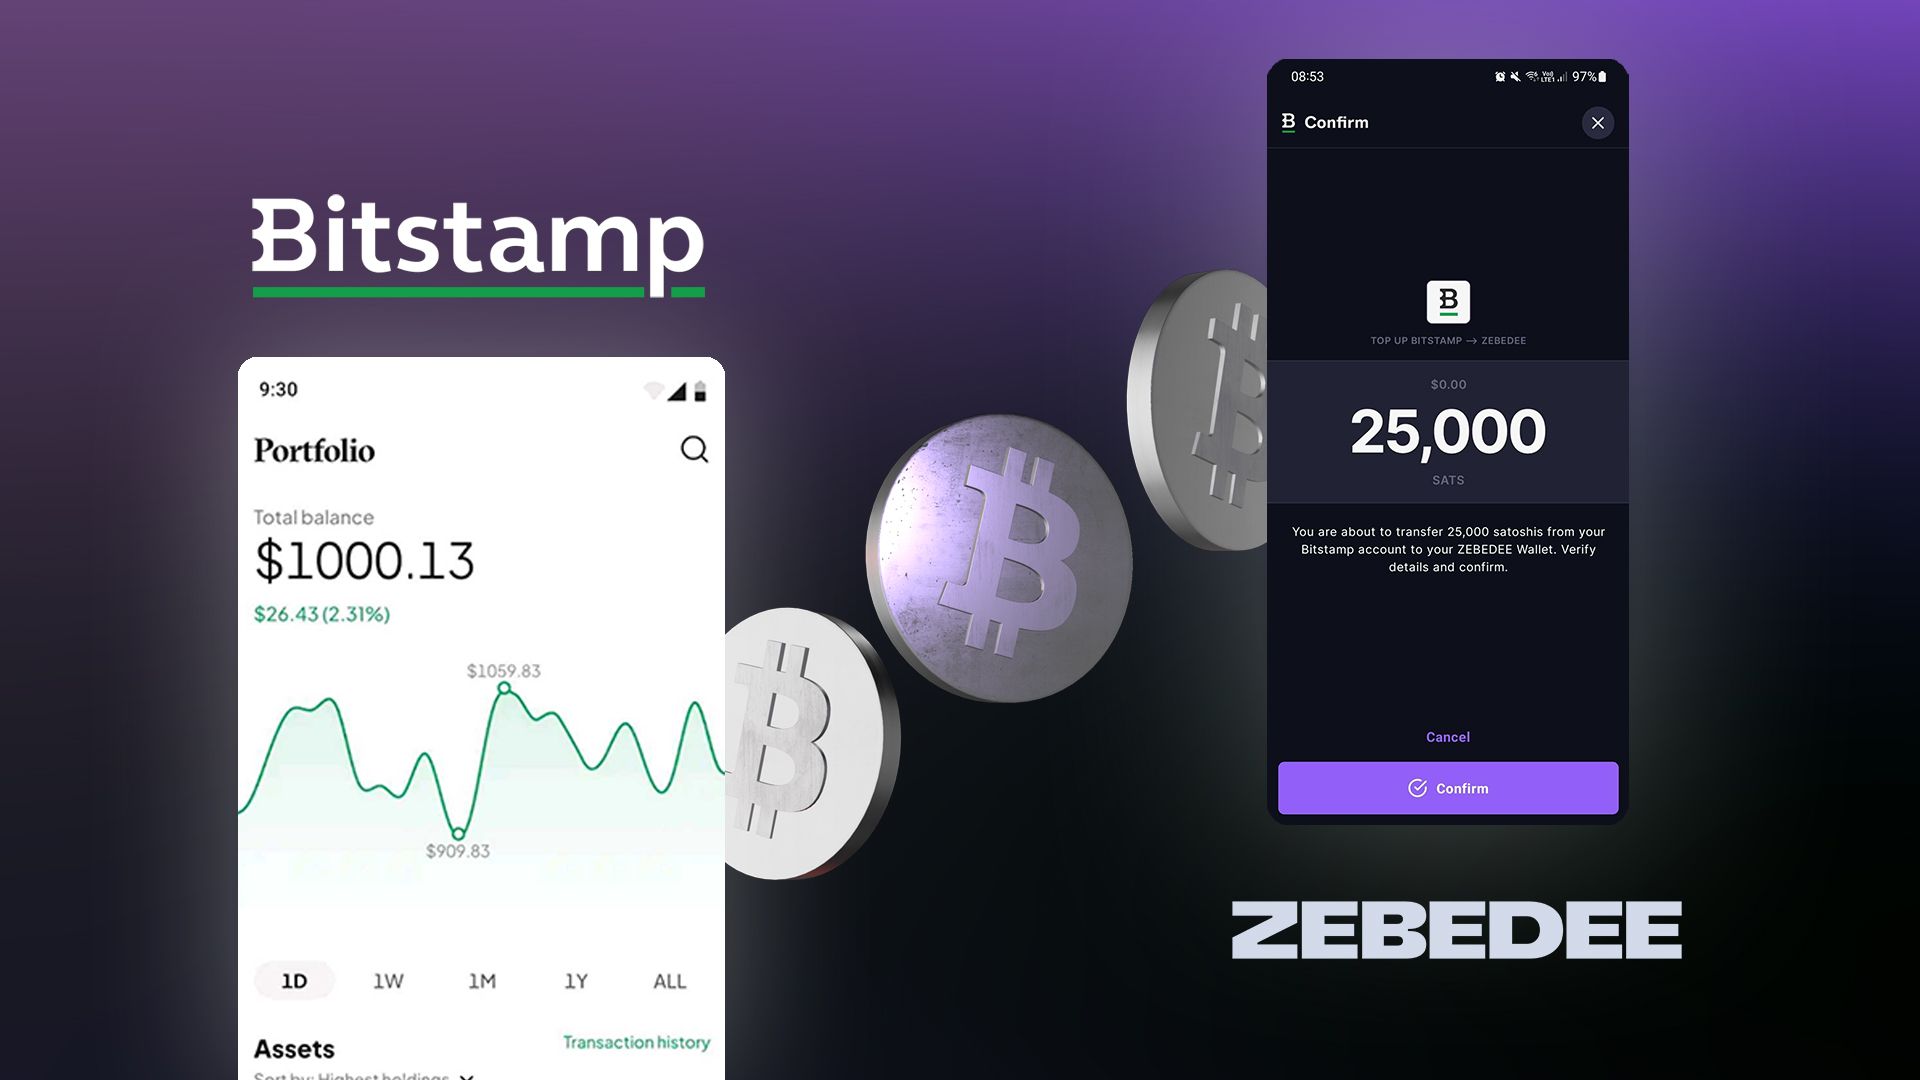 ZEBEDEE × Bitstamp – Integration of Lightning into the exchange.